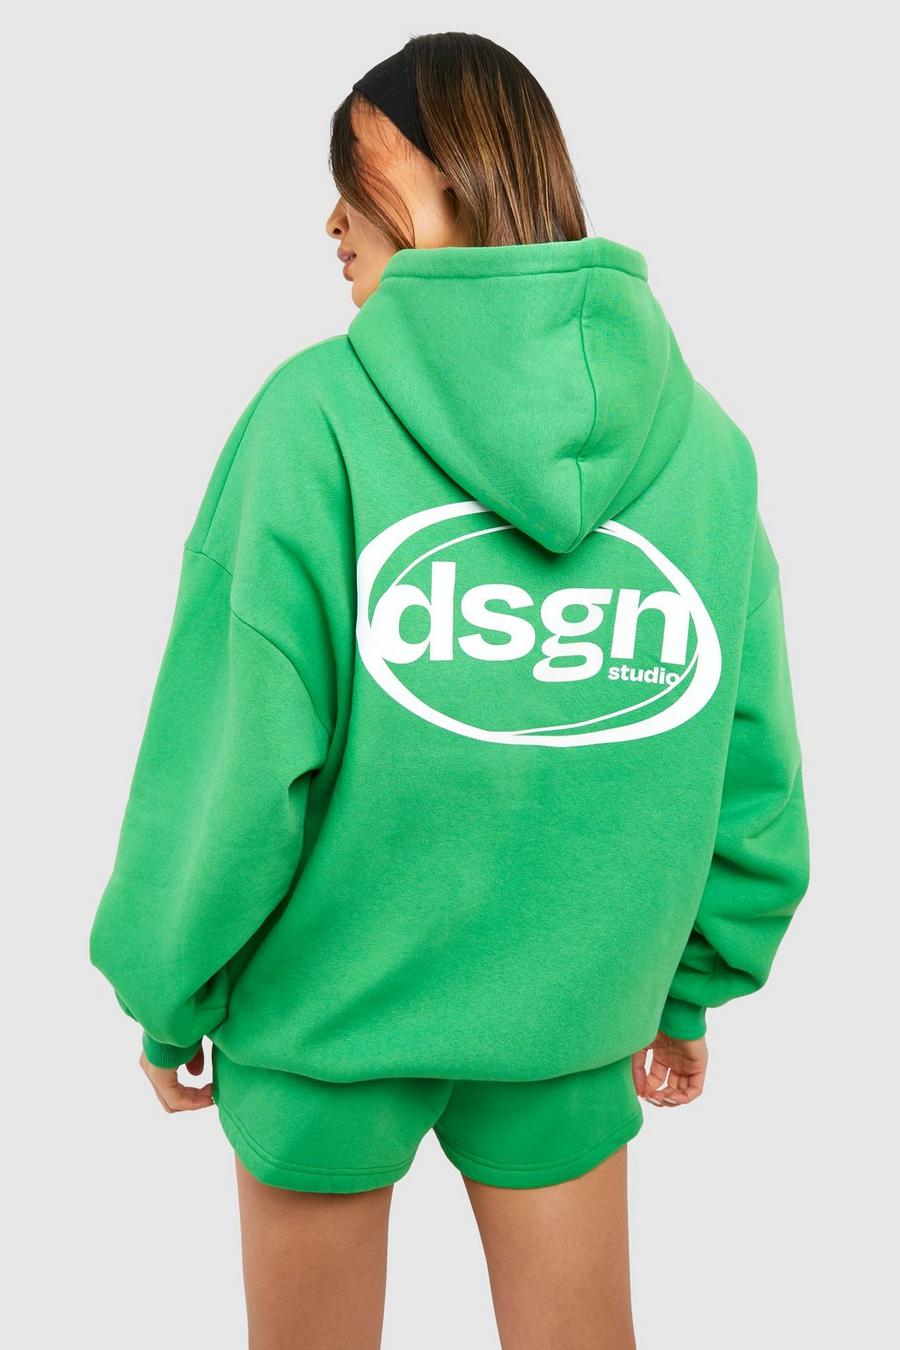 Kurzer Trainingsanzug mit Dsgn Studio Slogan und Kapuze, Green image number 1